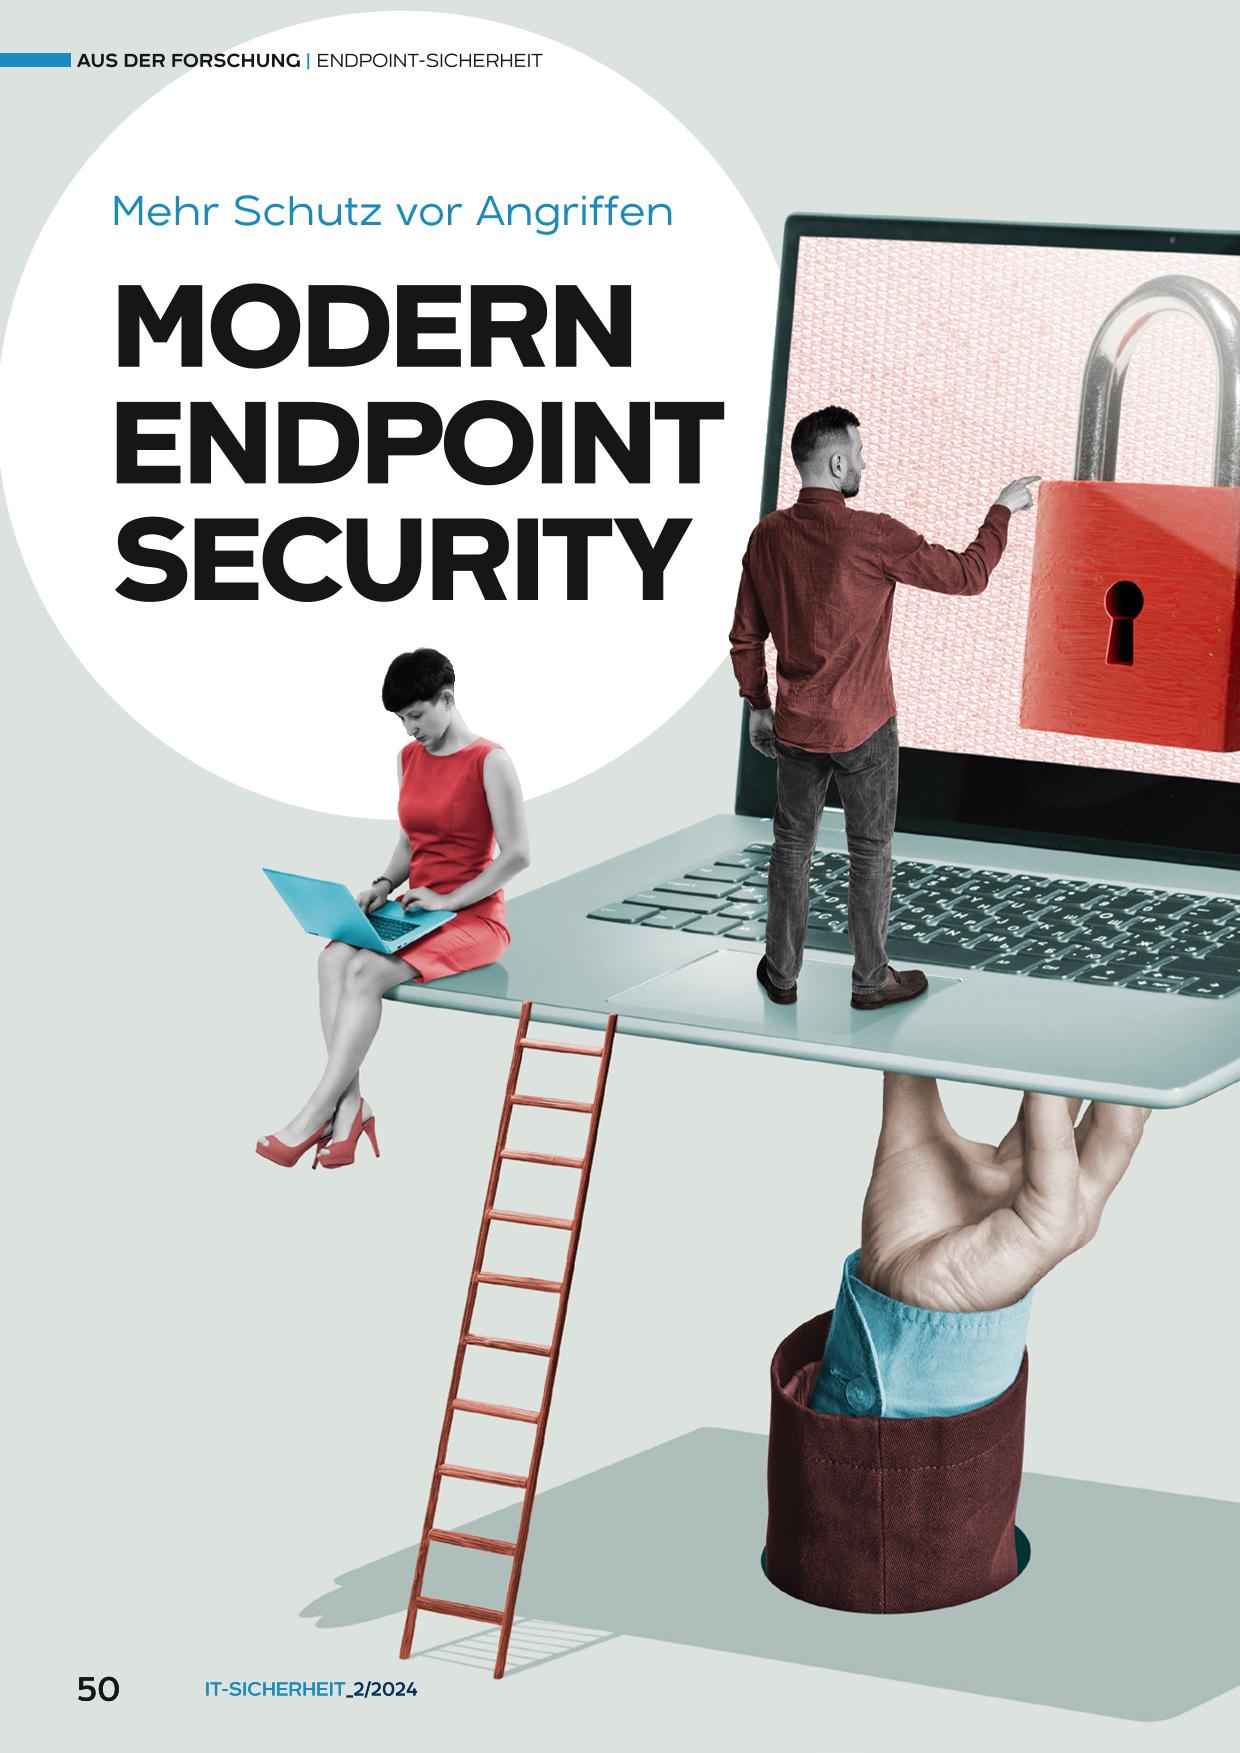 Modern Endpoint Security - Mehr Schutz vor Angriffen